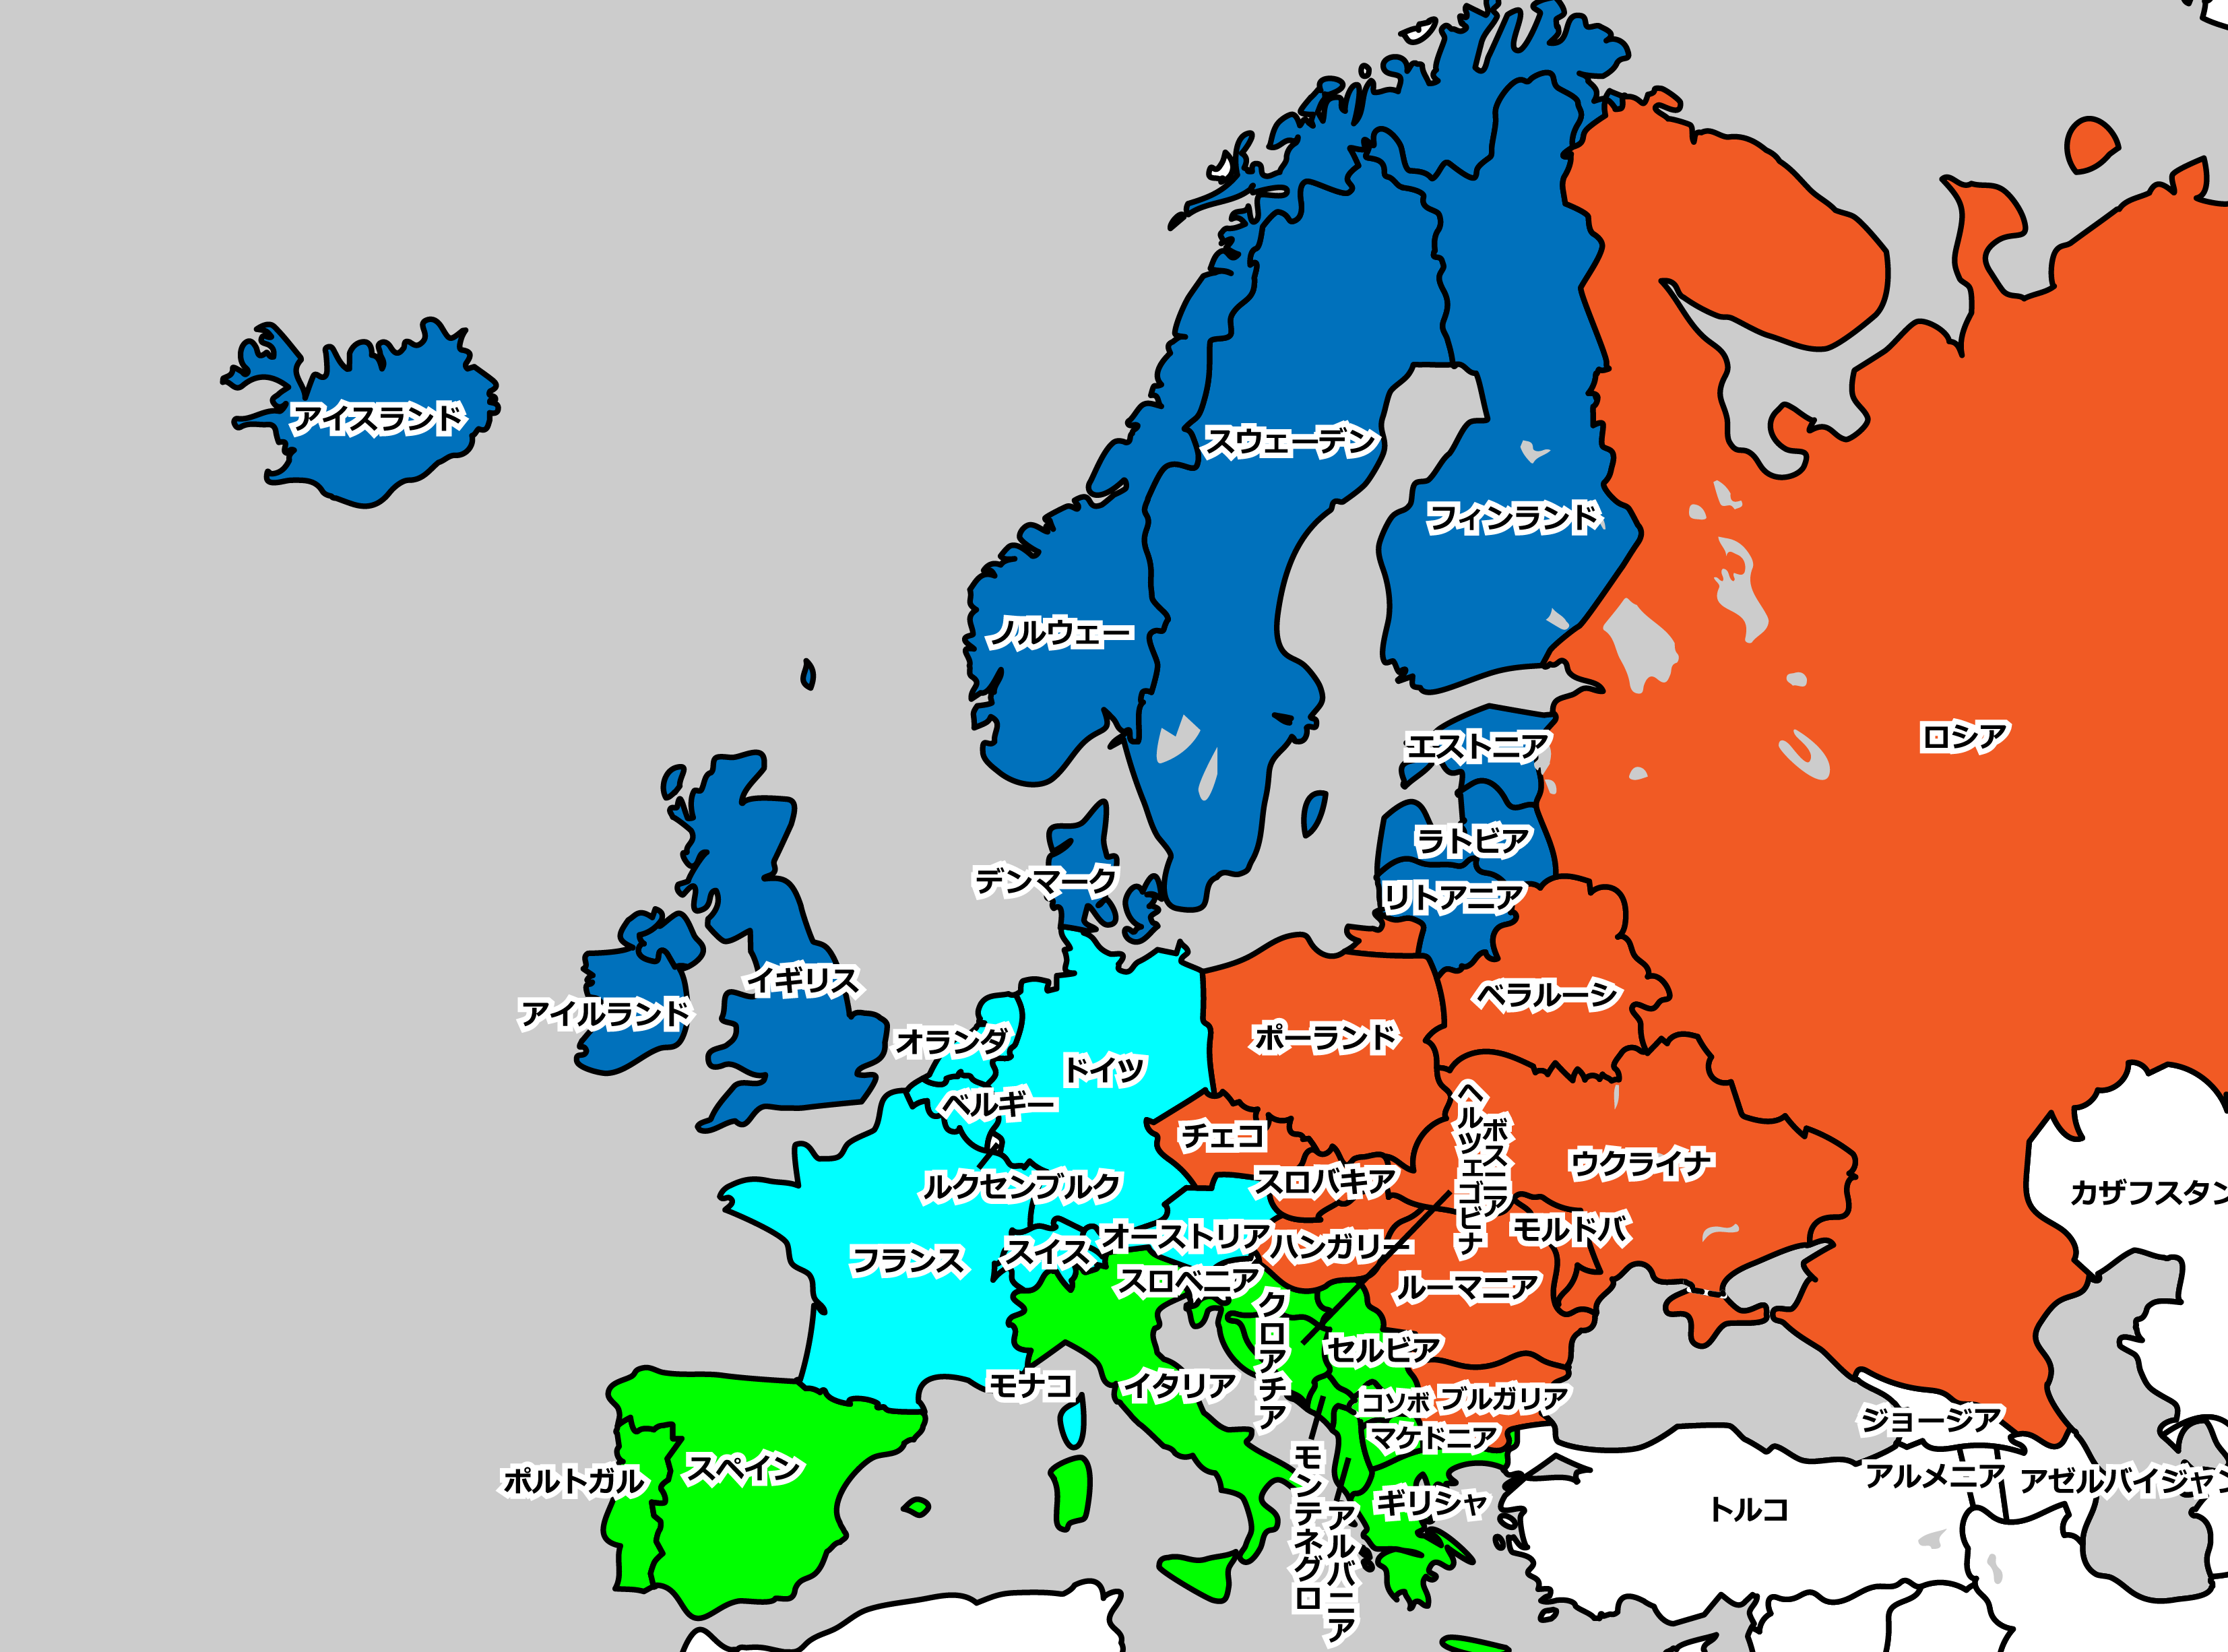 西欧と東欧の違い〜区分・境界を地図で確認〜